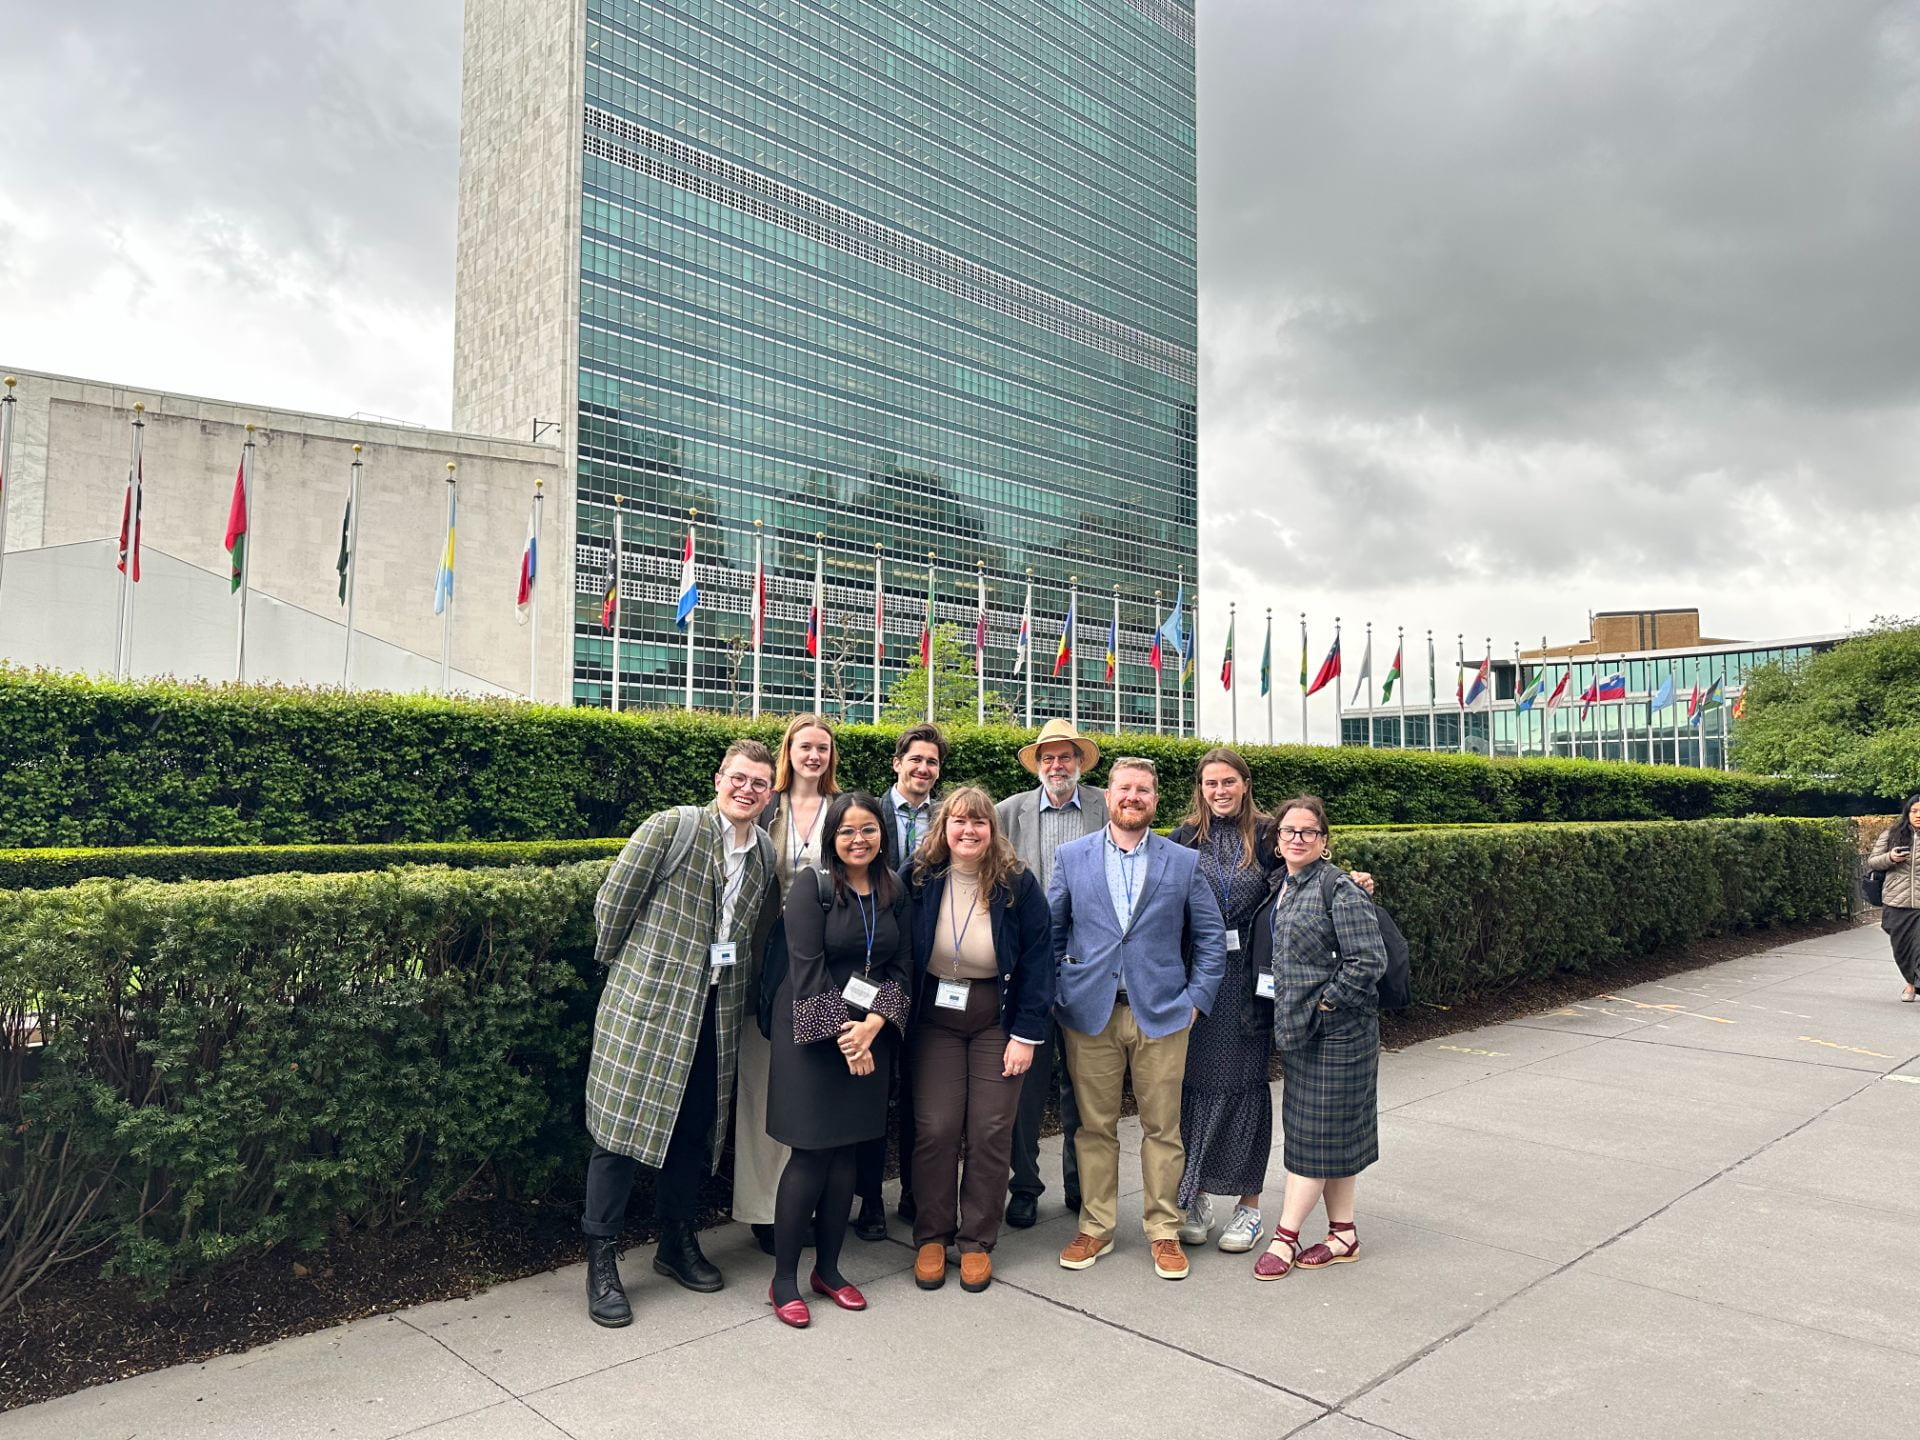 WPFD23 Team at the UN Headquarters